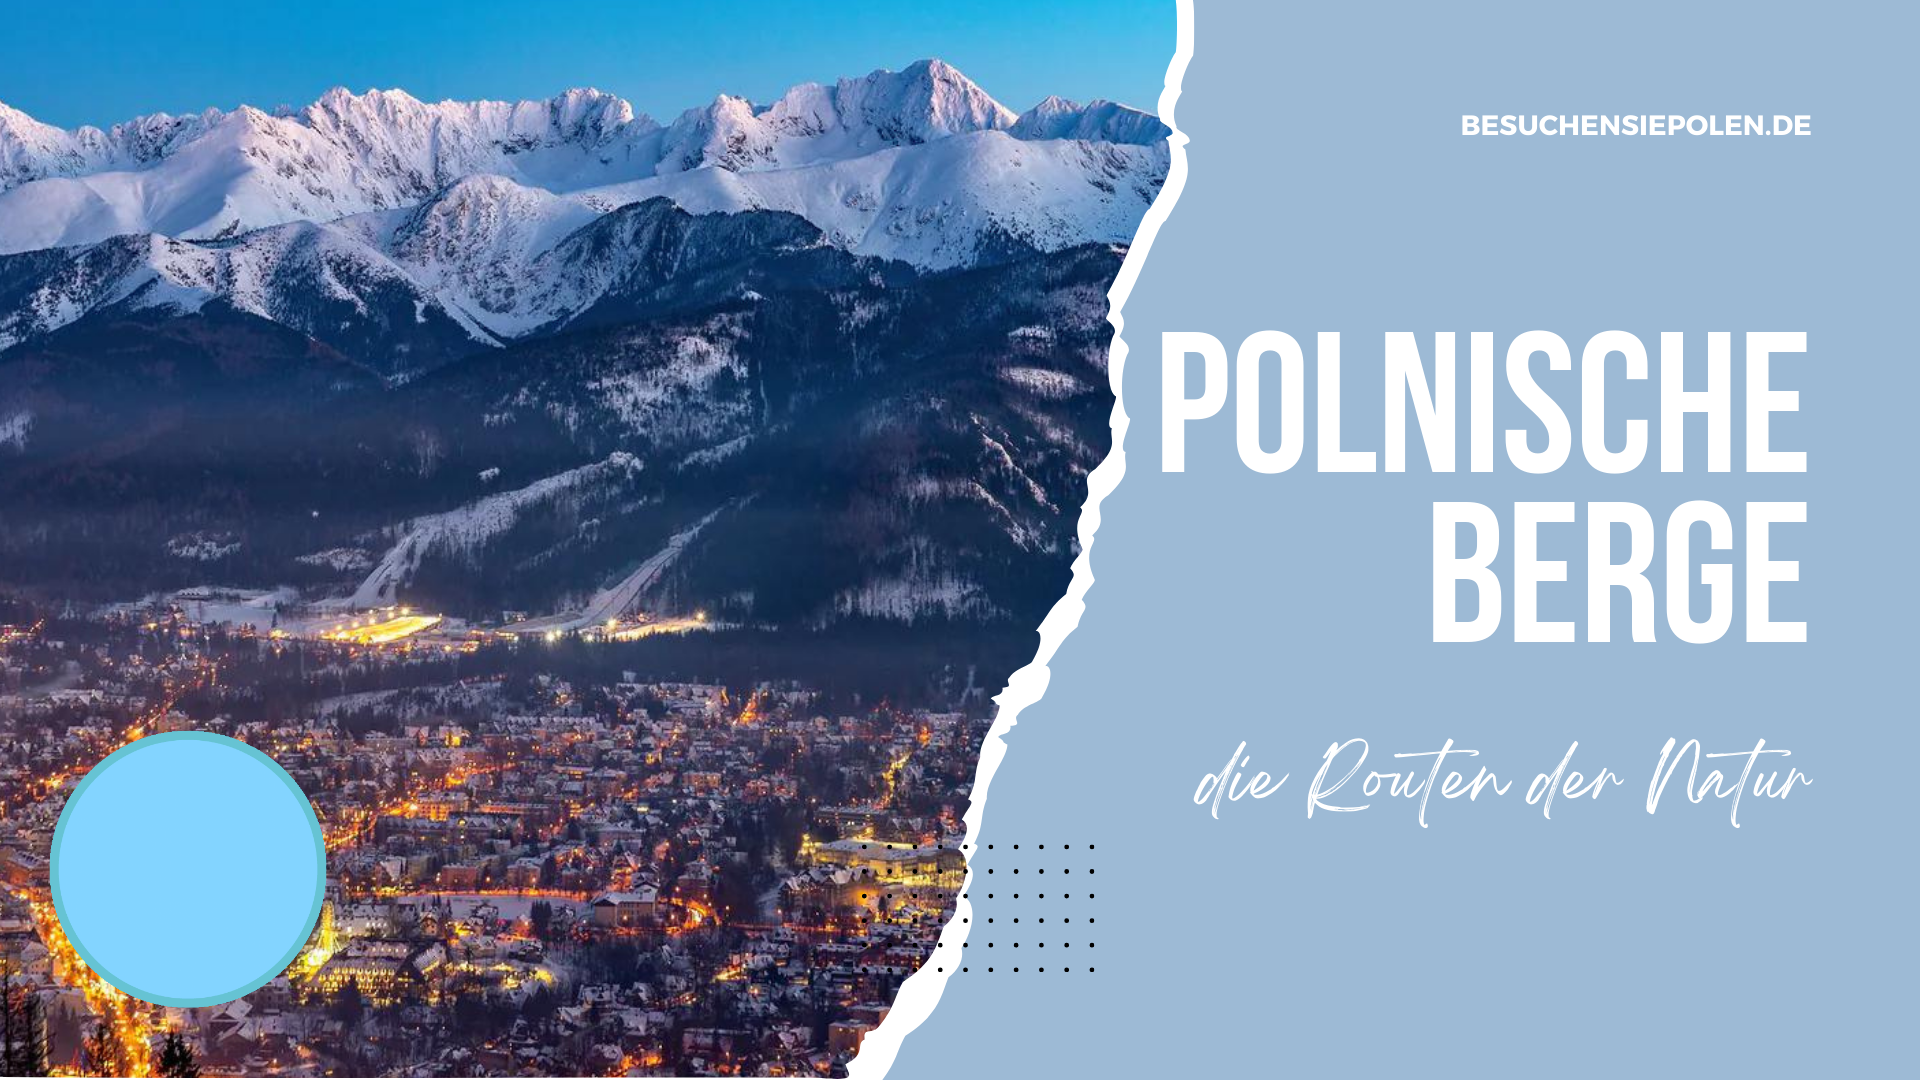 Polnische Berge die Routen der Natur